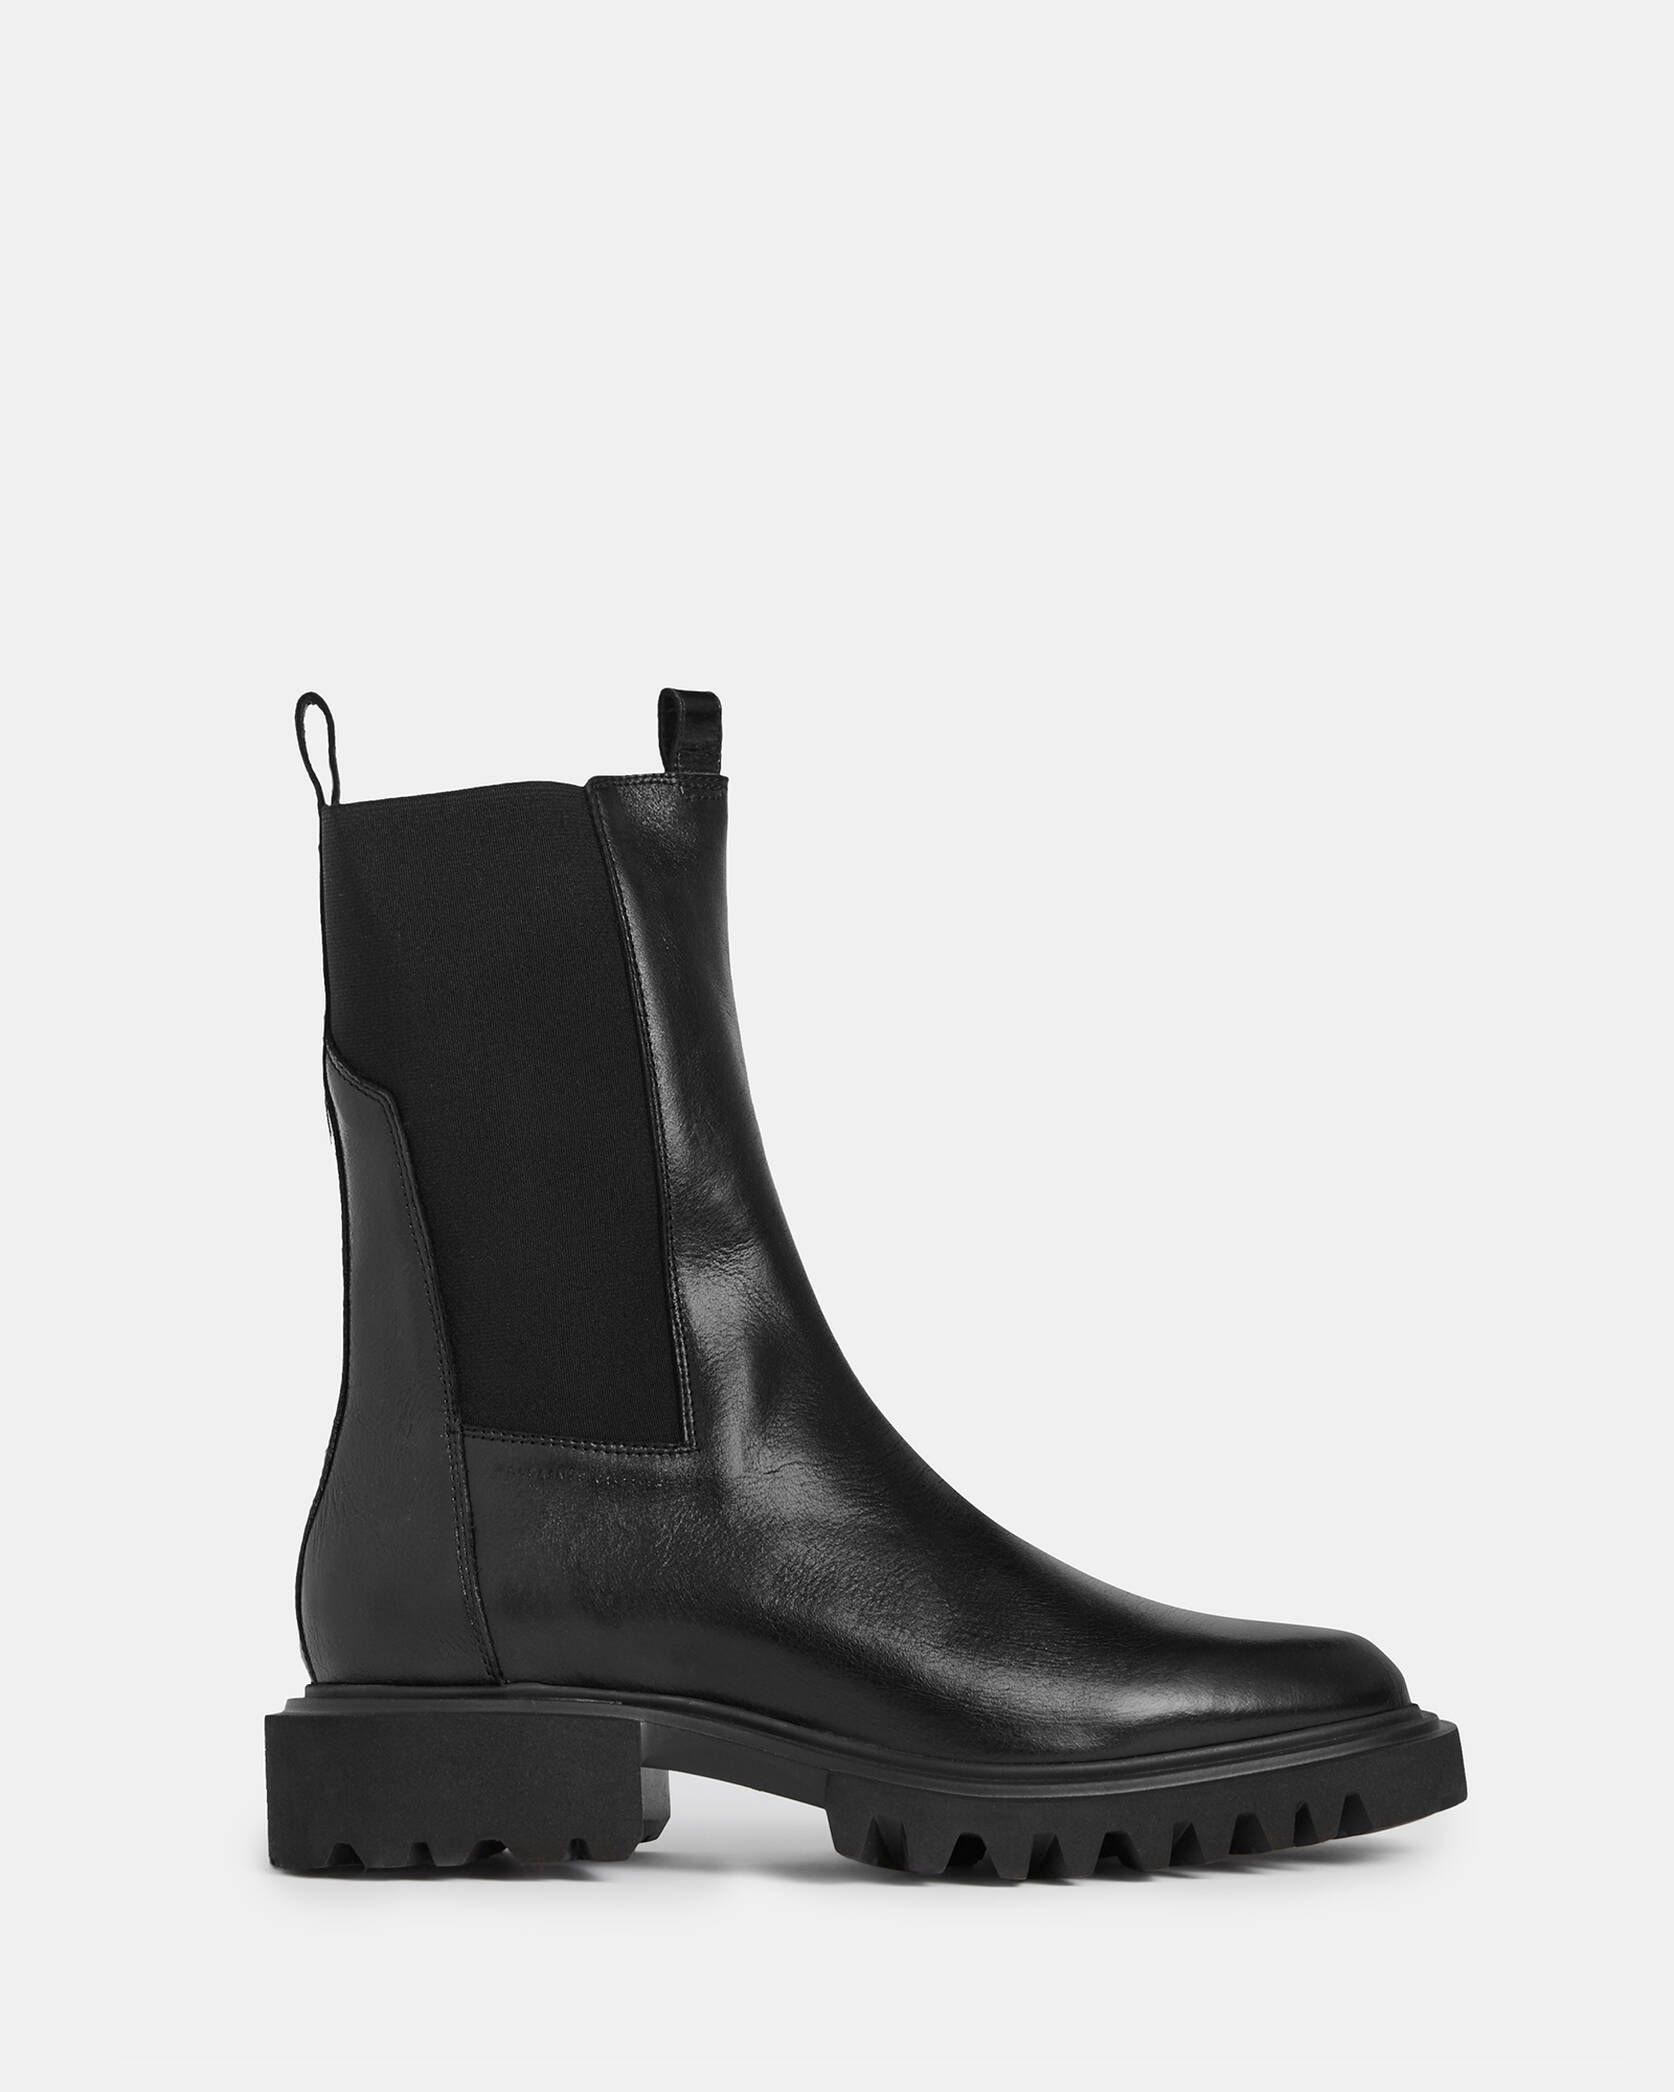 Hallie Leather Boots Black | ALLSAINTS | AllSaints UK